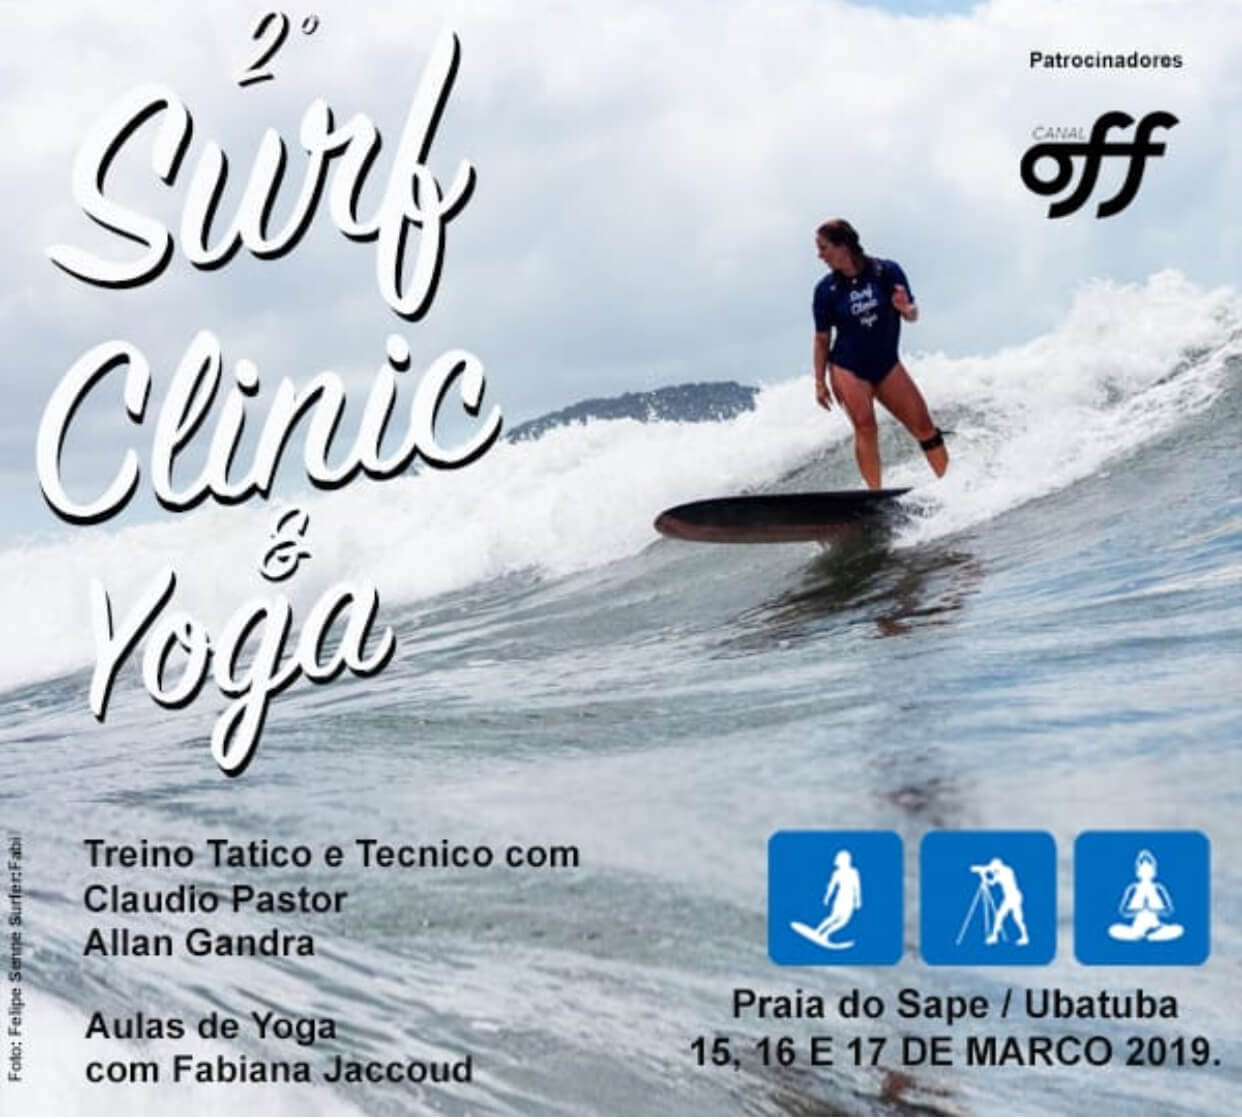 2 Surf Clinic e Yoga